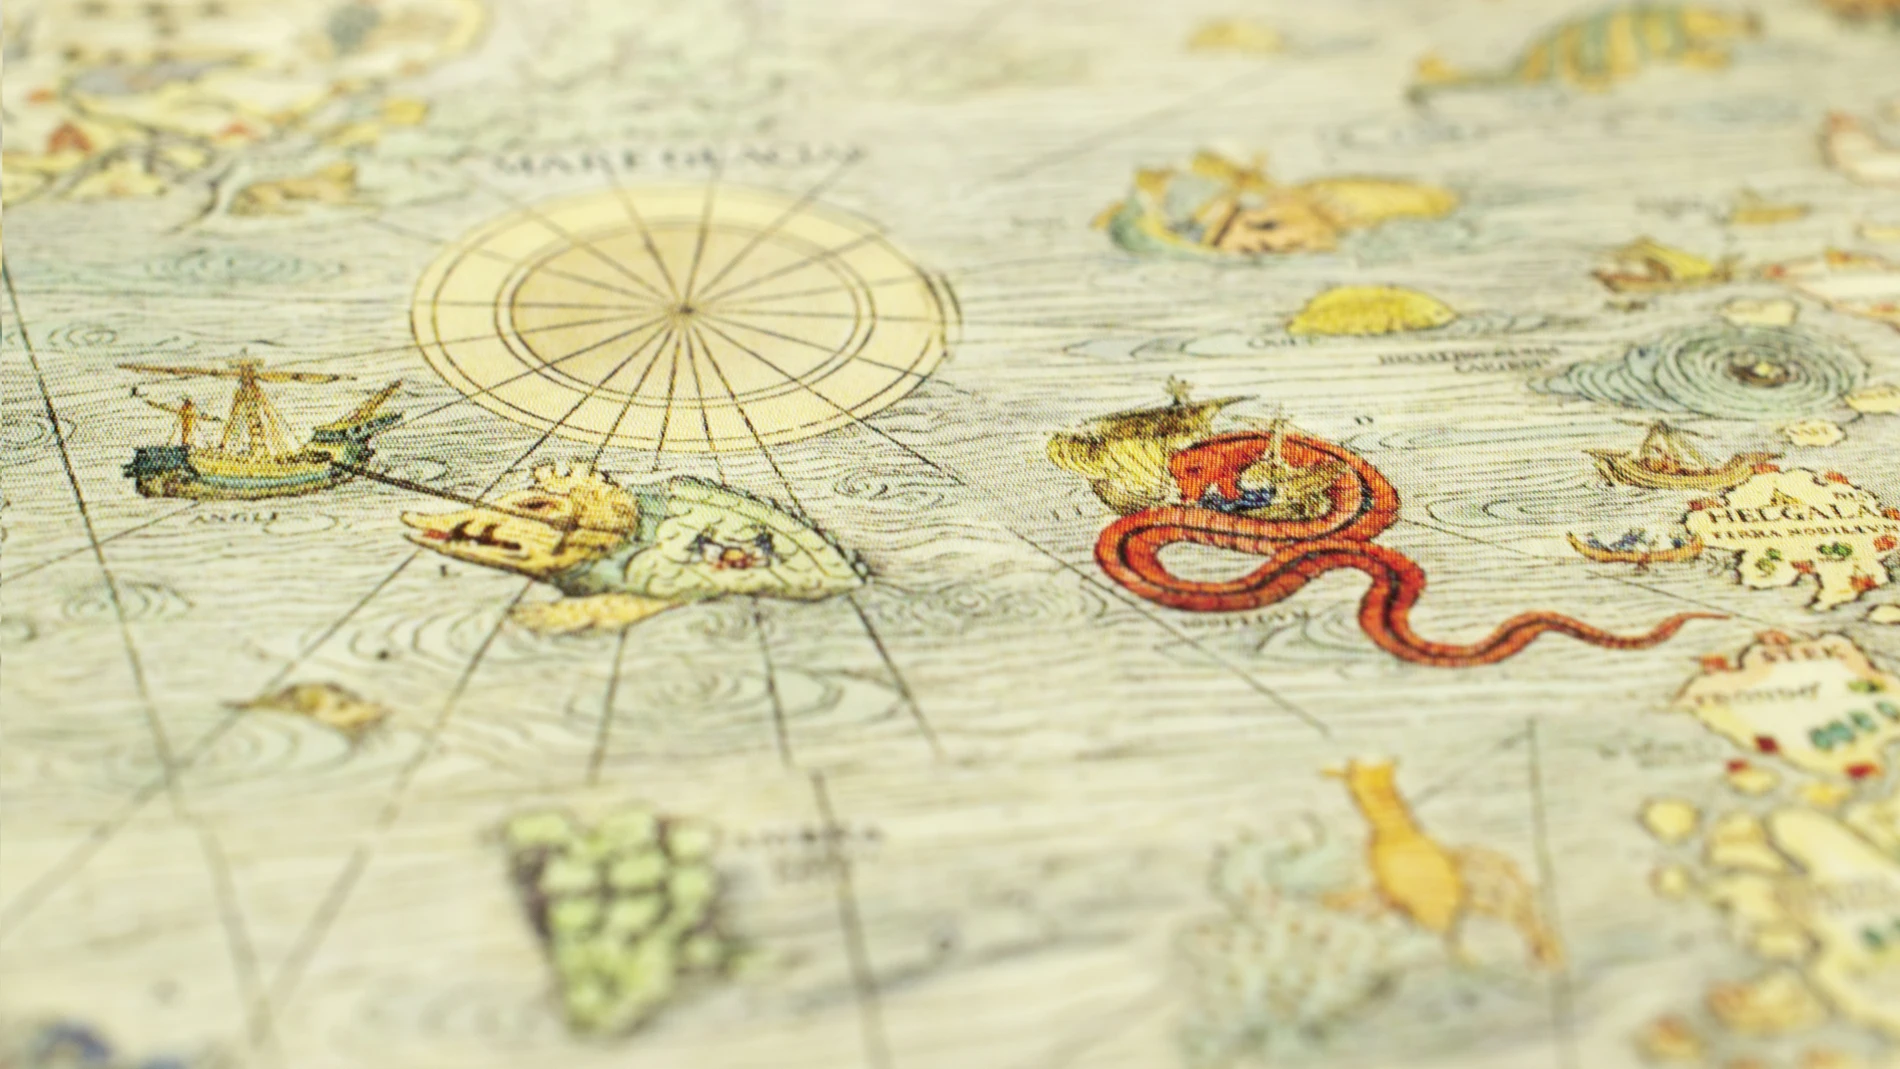 Detalle de la Carta Marina. En el centro de la imagen puede apreciarse la temida "ballena isla".